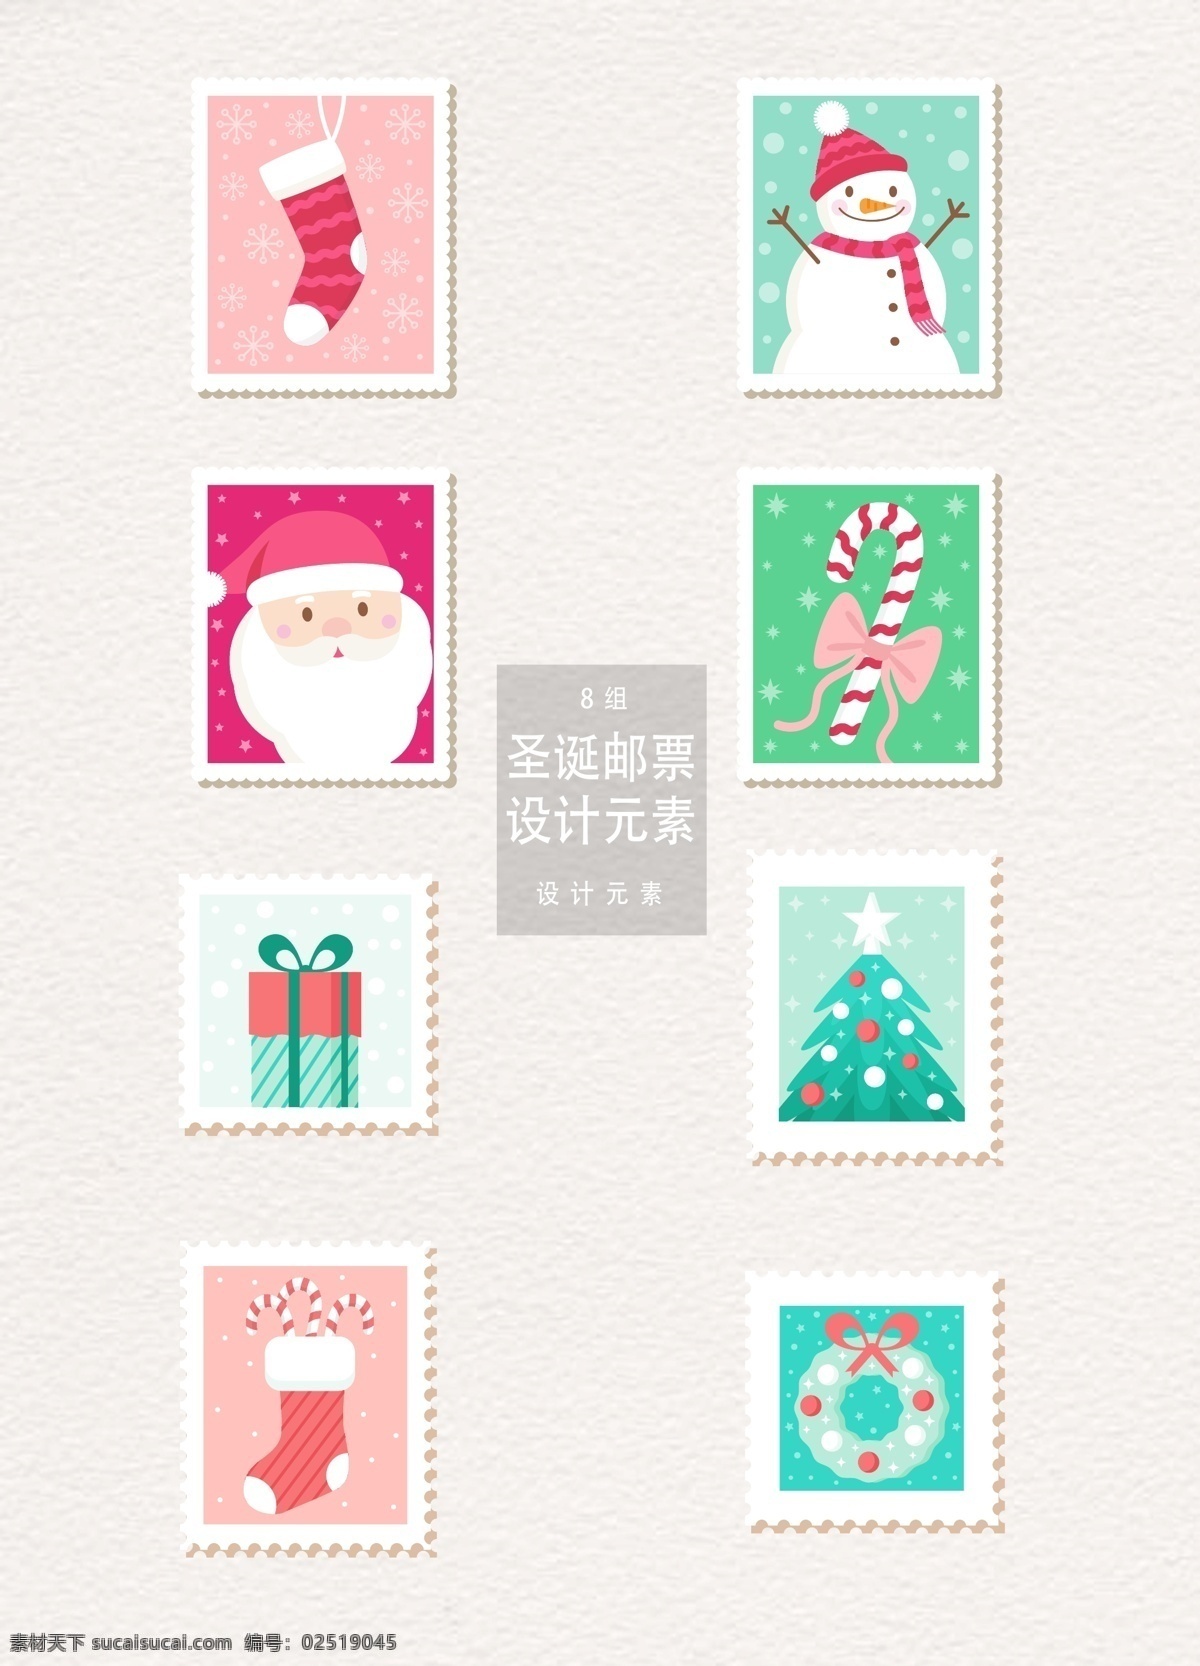 圣诞节 邮票 标签 元素 标签设计 圣诞老人 礼物 圣诞树 圣诞节邮票 圣诞 圣诞标签 雪人 圣诞袜